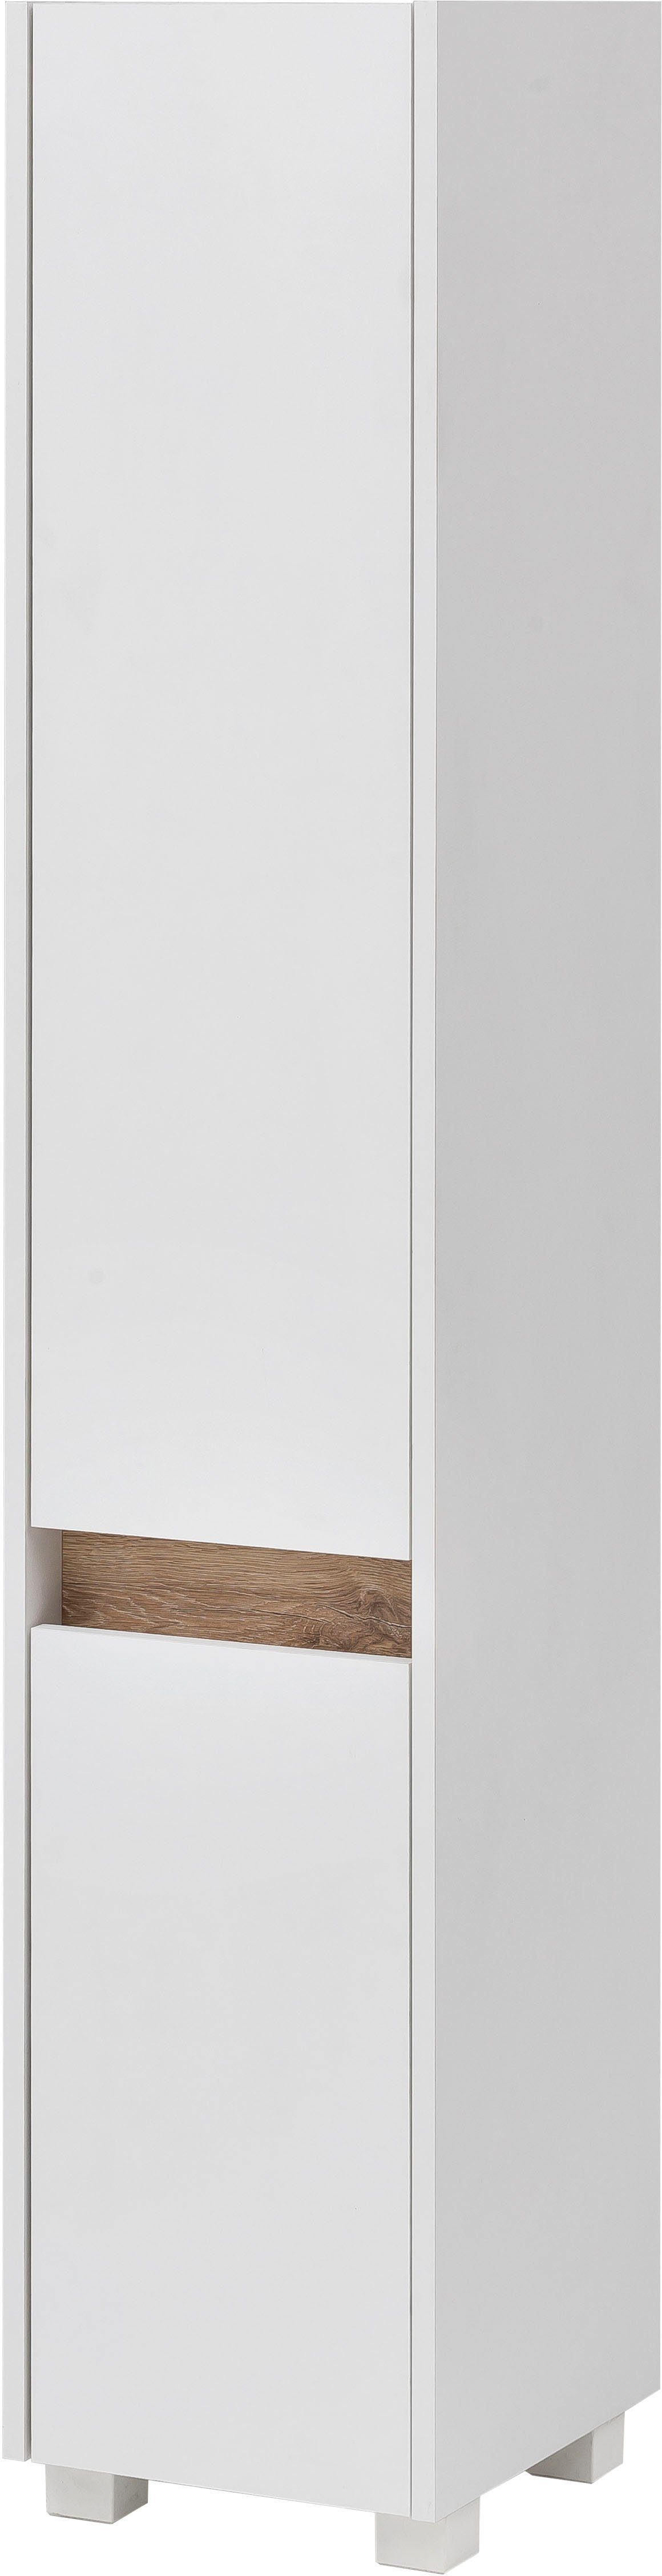 schildmeyer hoge kast cosmo hoogte 164,5 cm, badkamerkast, lijst in moderne wildeiken-look wit